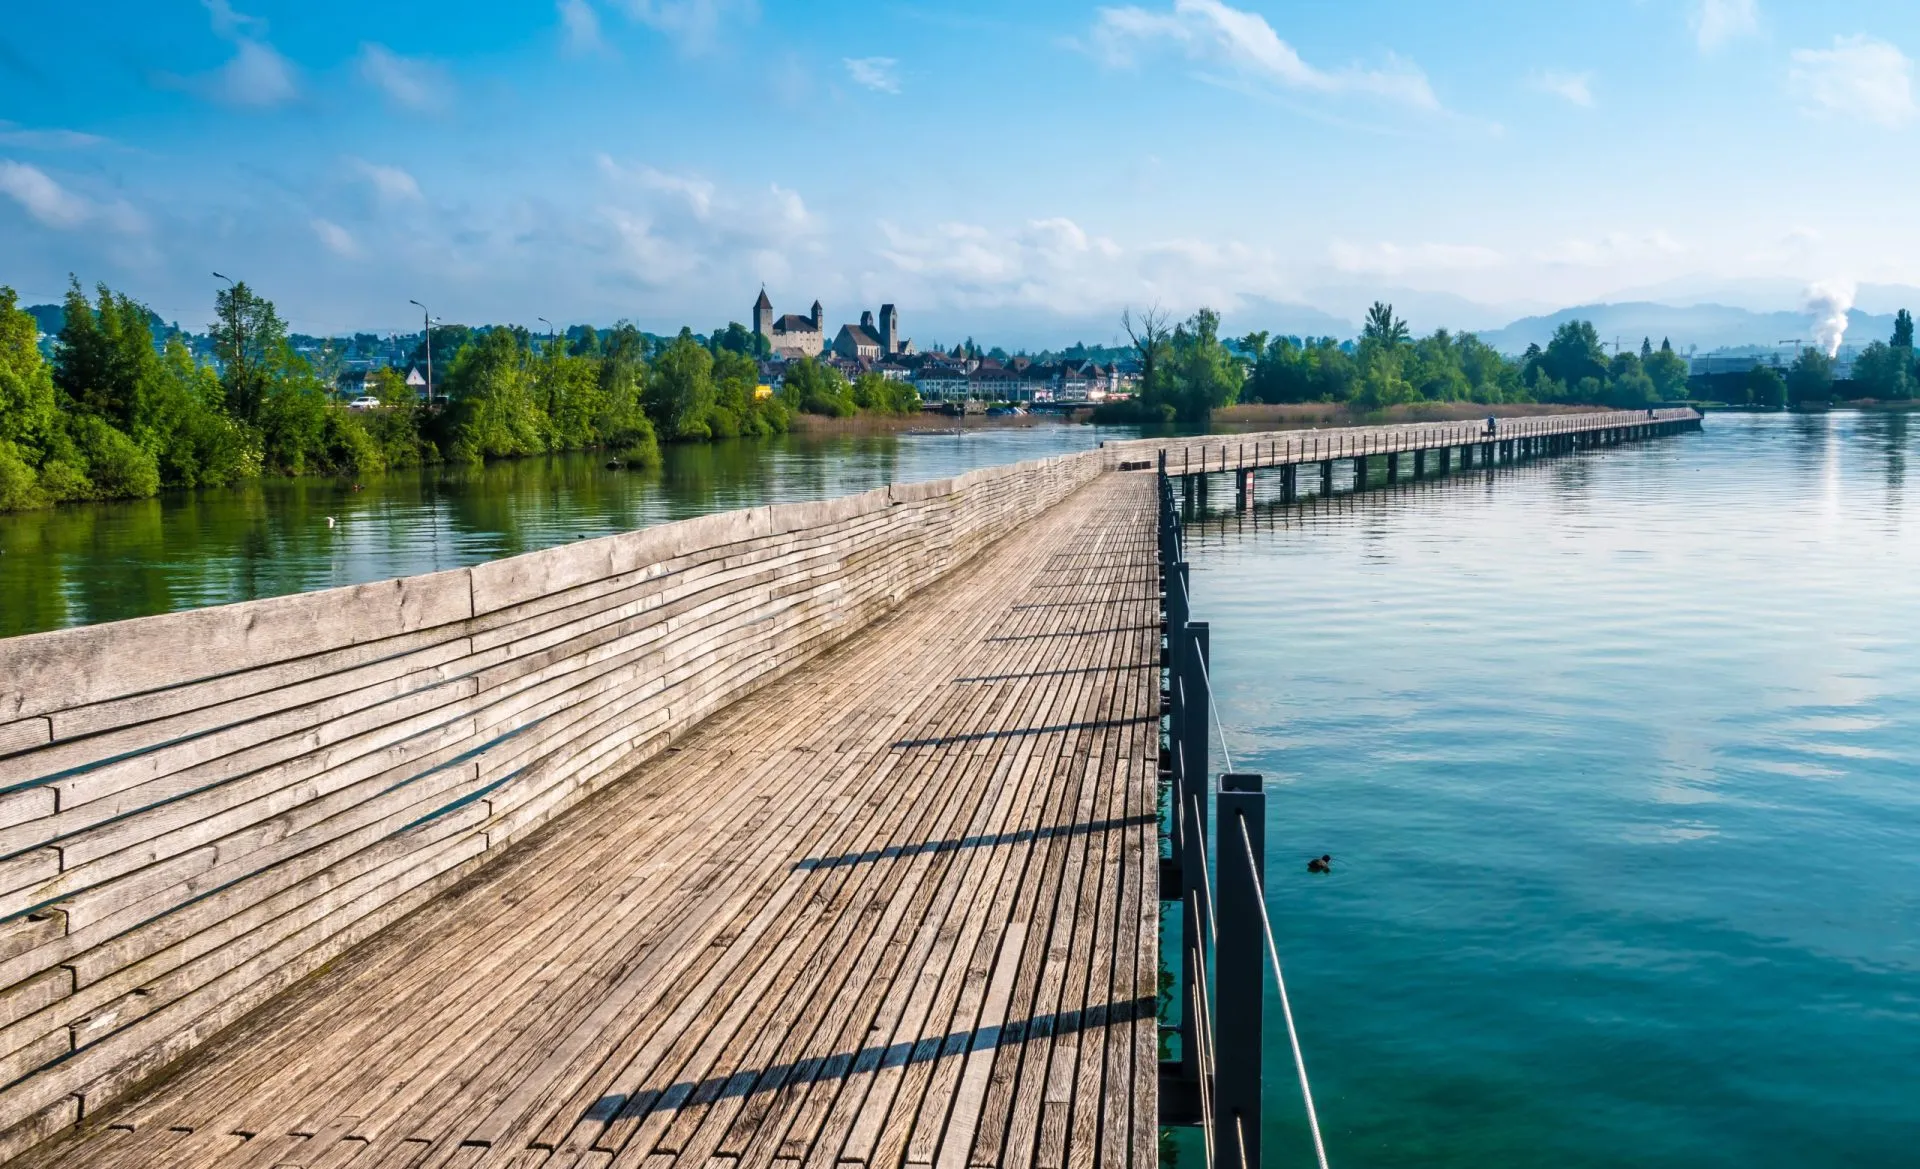 El holzsteg un puente peatonal de madera que cruza el lago de zurich